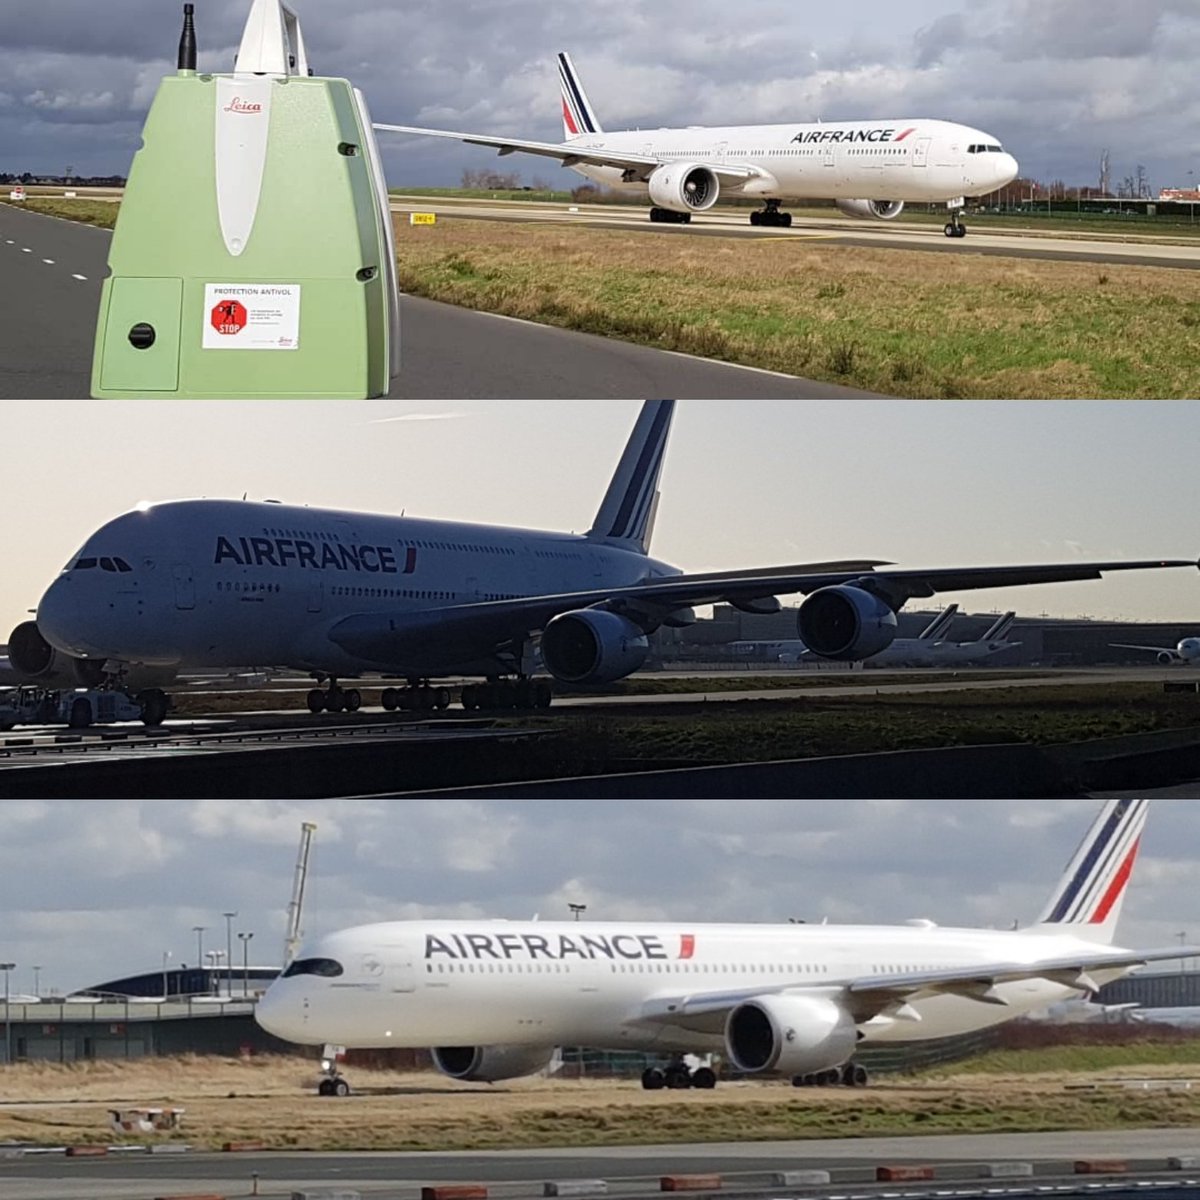 Beau point de vue aujourd'hui entre travail #topographie #scan3d et photos #avgeeks roulage vers les pistes #CDG @ParisAeroport @AvgeeksFR #A350 #A380 #boeing777 😉📷